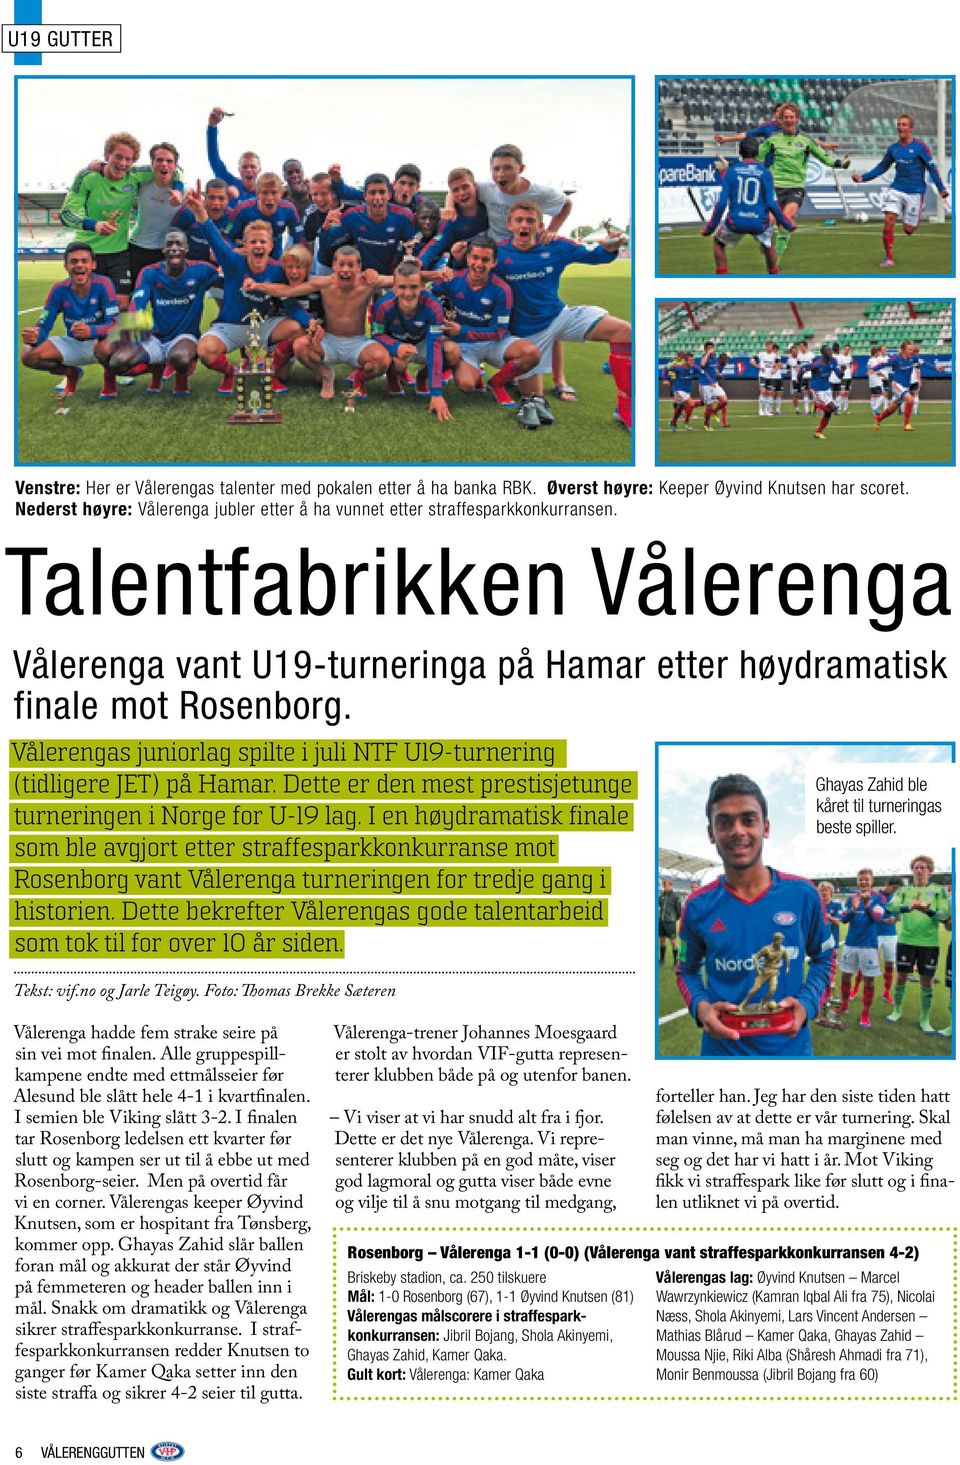 Vålerengas juniorlag spilte i juli NTF U19-turnering (tidligere JET) på Hamar. Dette er den mest prestisjetunge turneringen i Norge for U-19 lag.